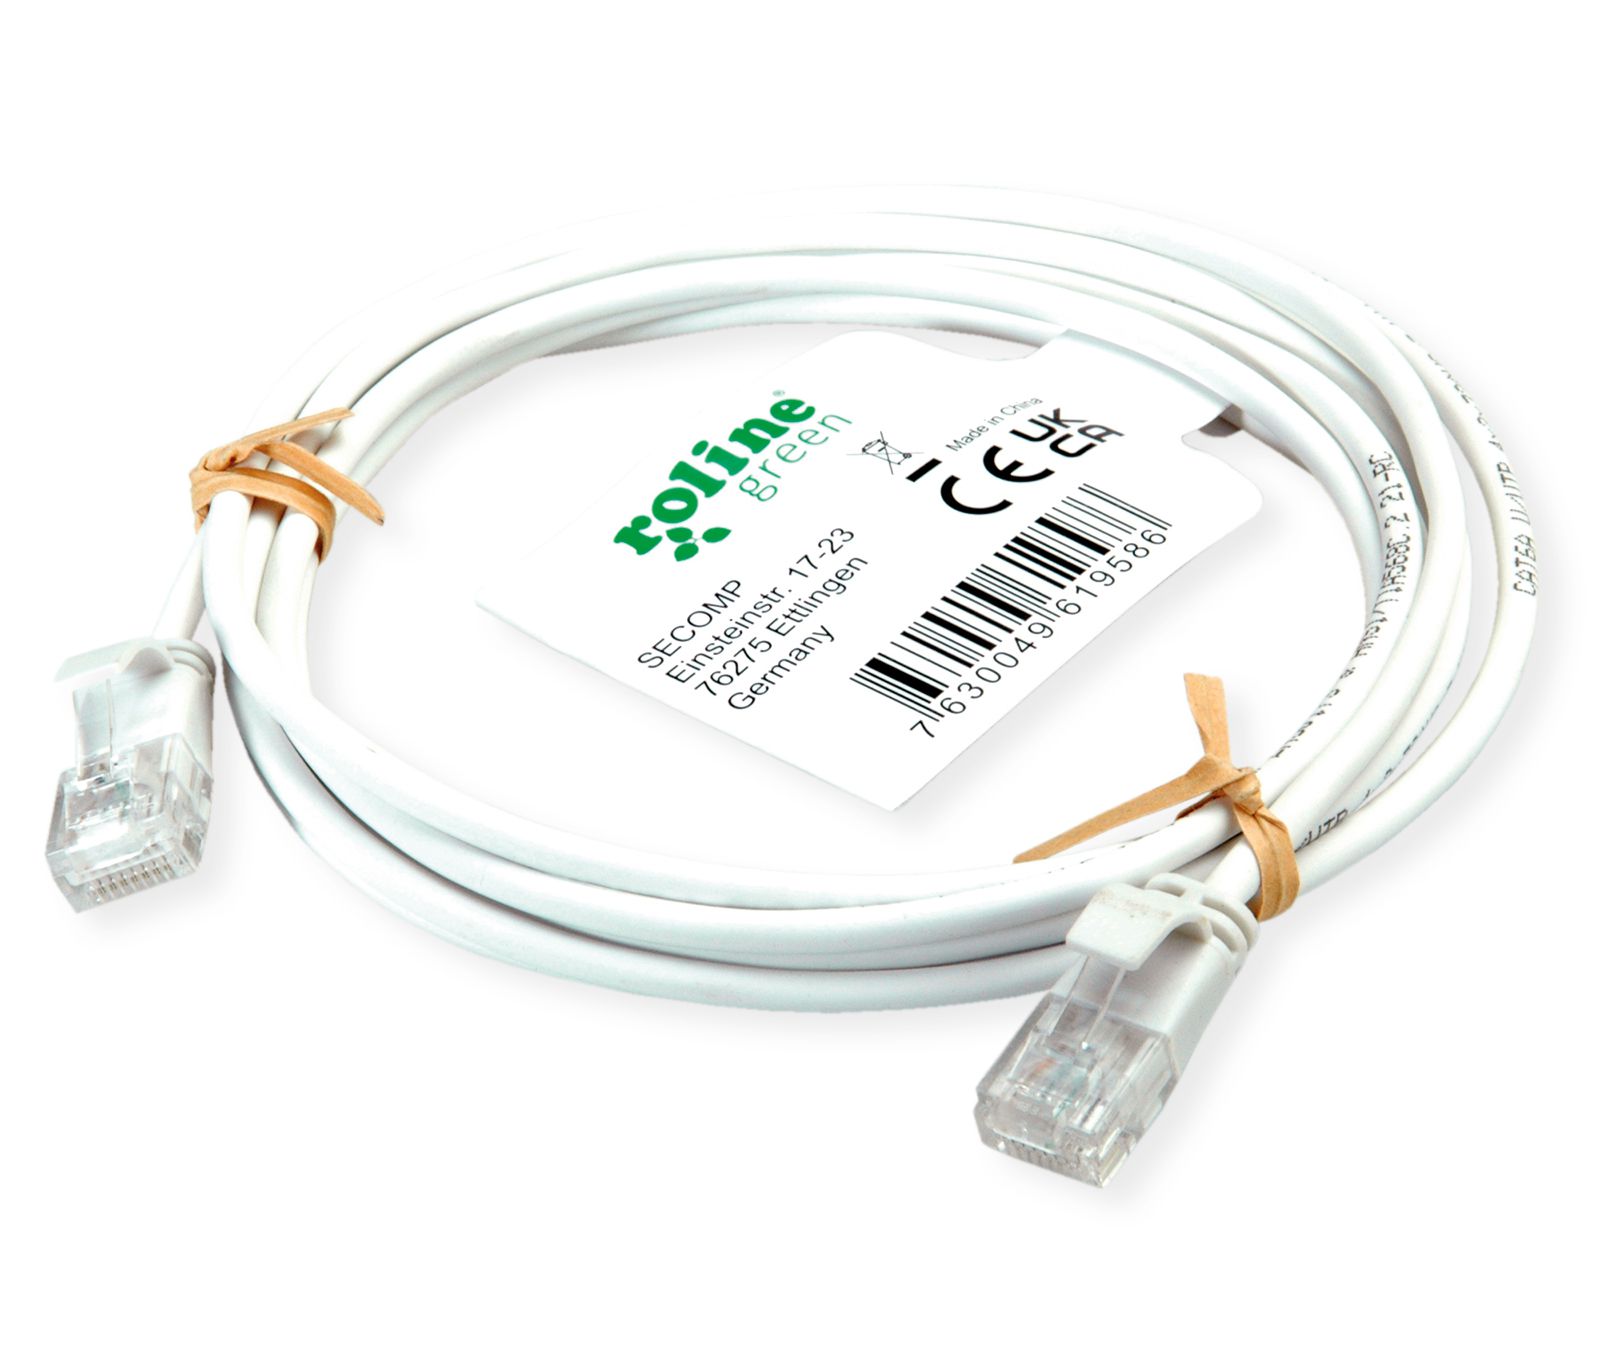 VALUE Câble USB 3.2 Gen 2, avec PD (Power Delivery), avec Emark, C-C, M/M,  blanc, 1 m - COOL AG